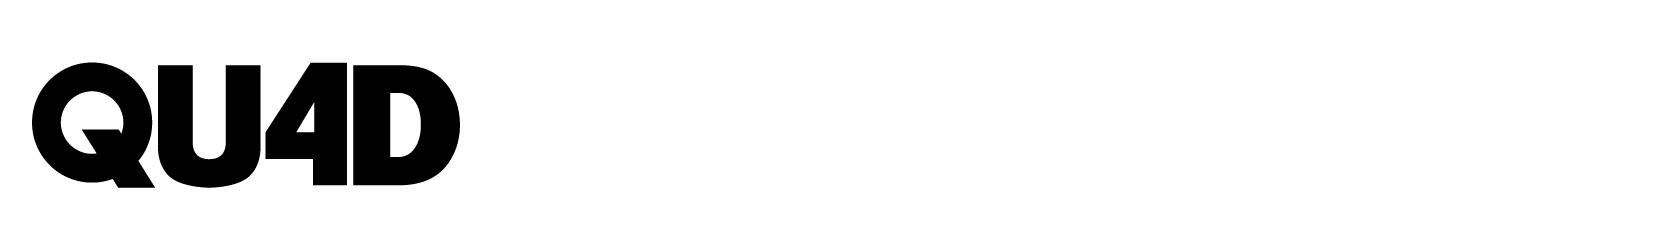 QUAD - FOUR BATTEN COMPACT WAVE Logo